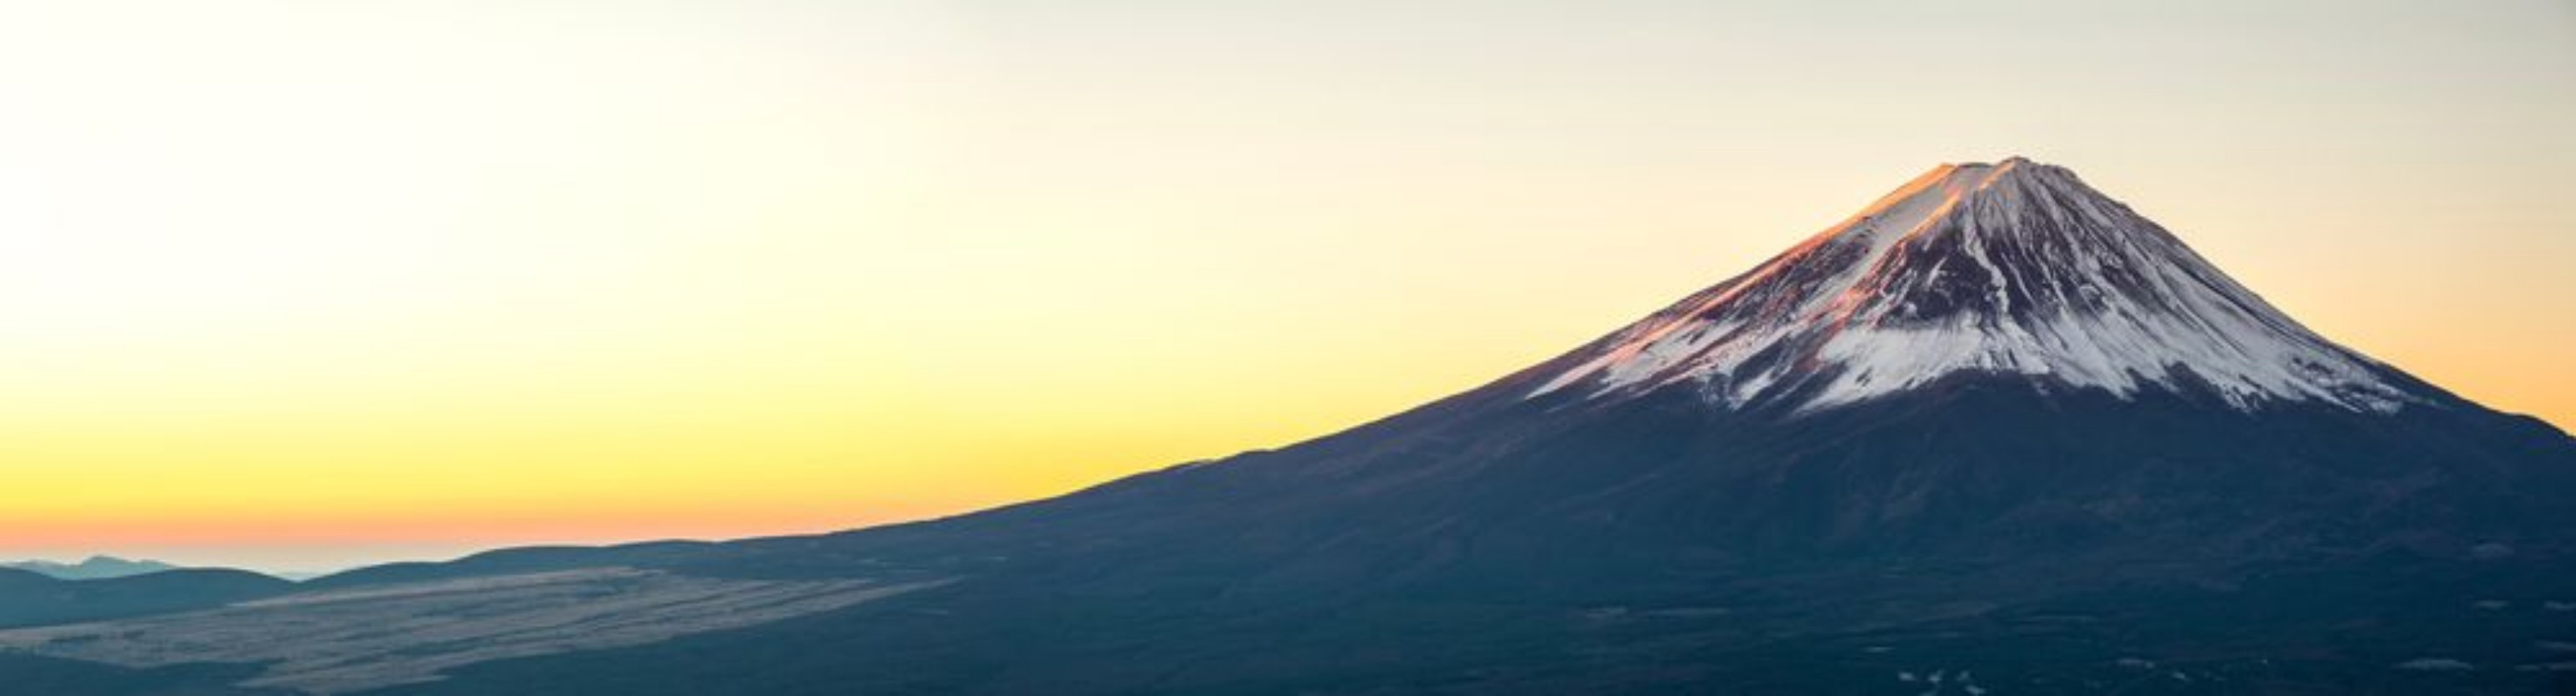 Image de Mountain Fuji